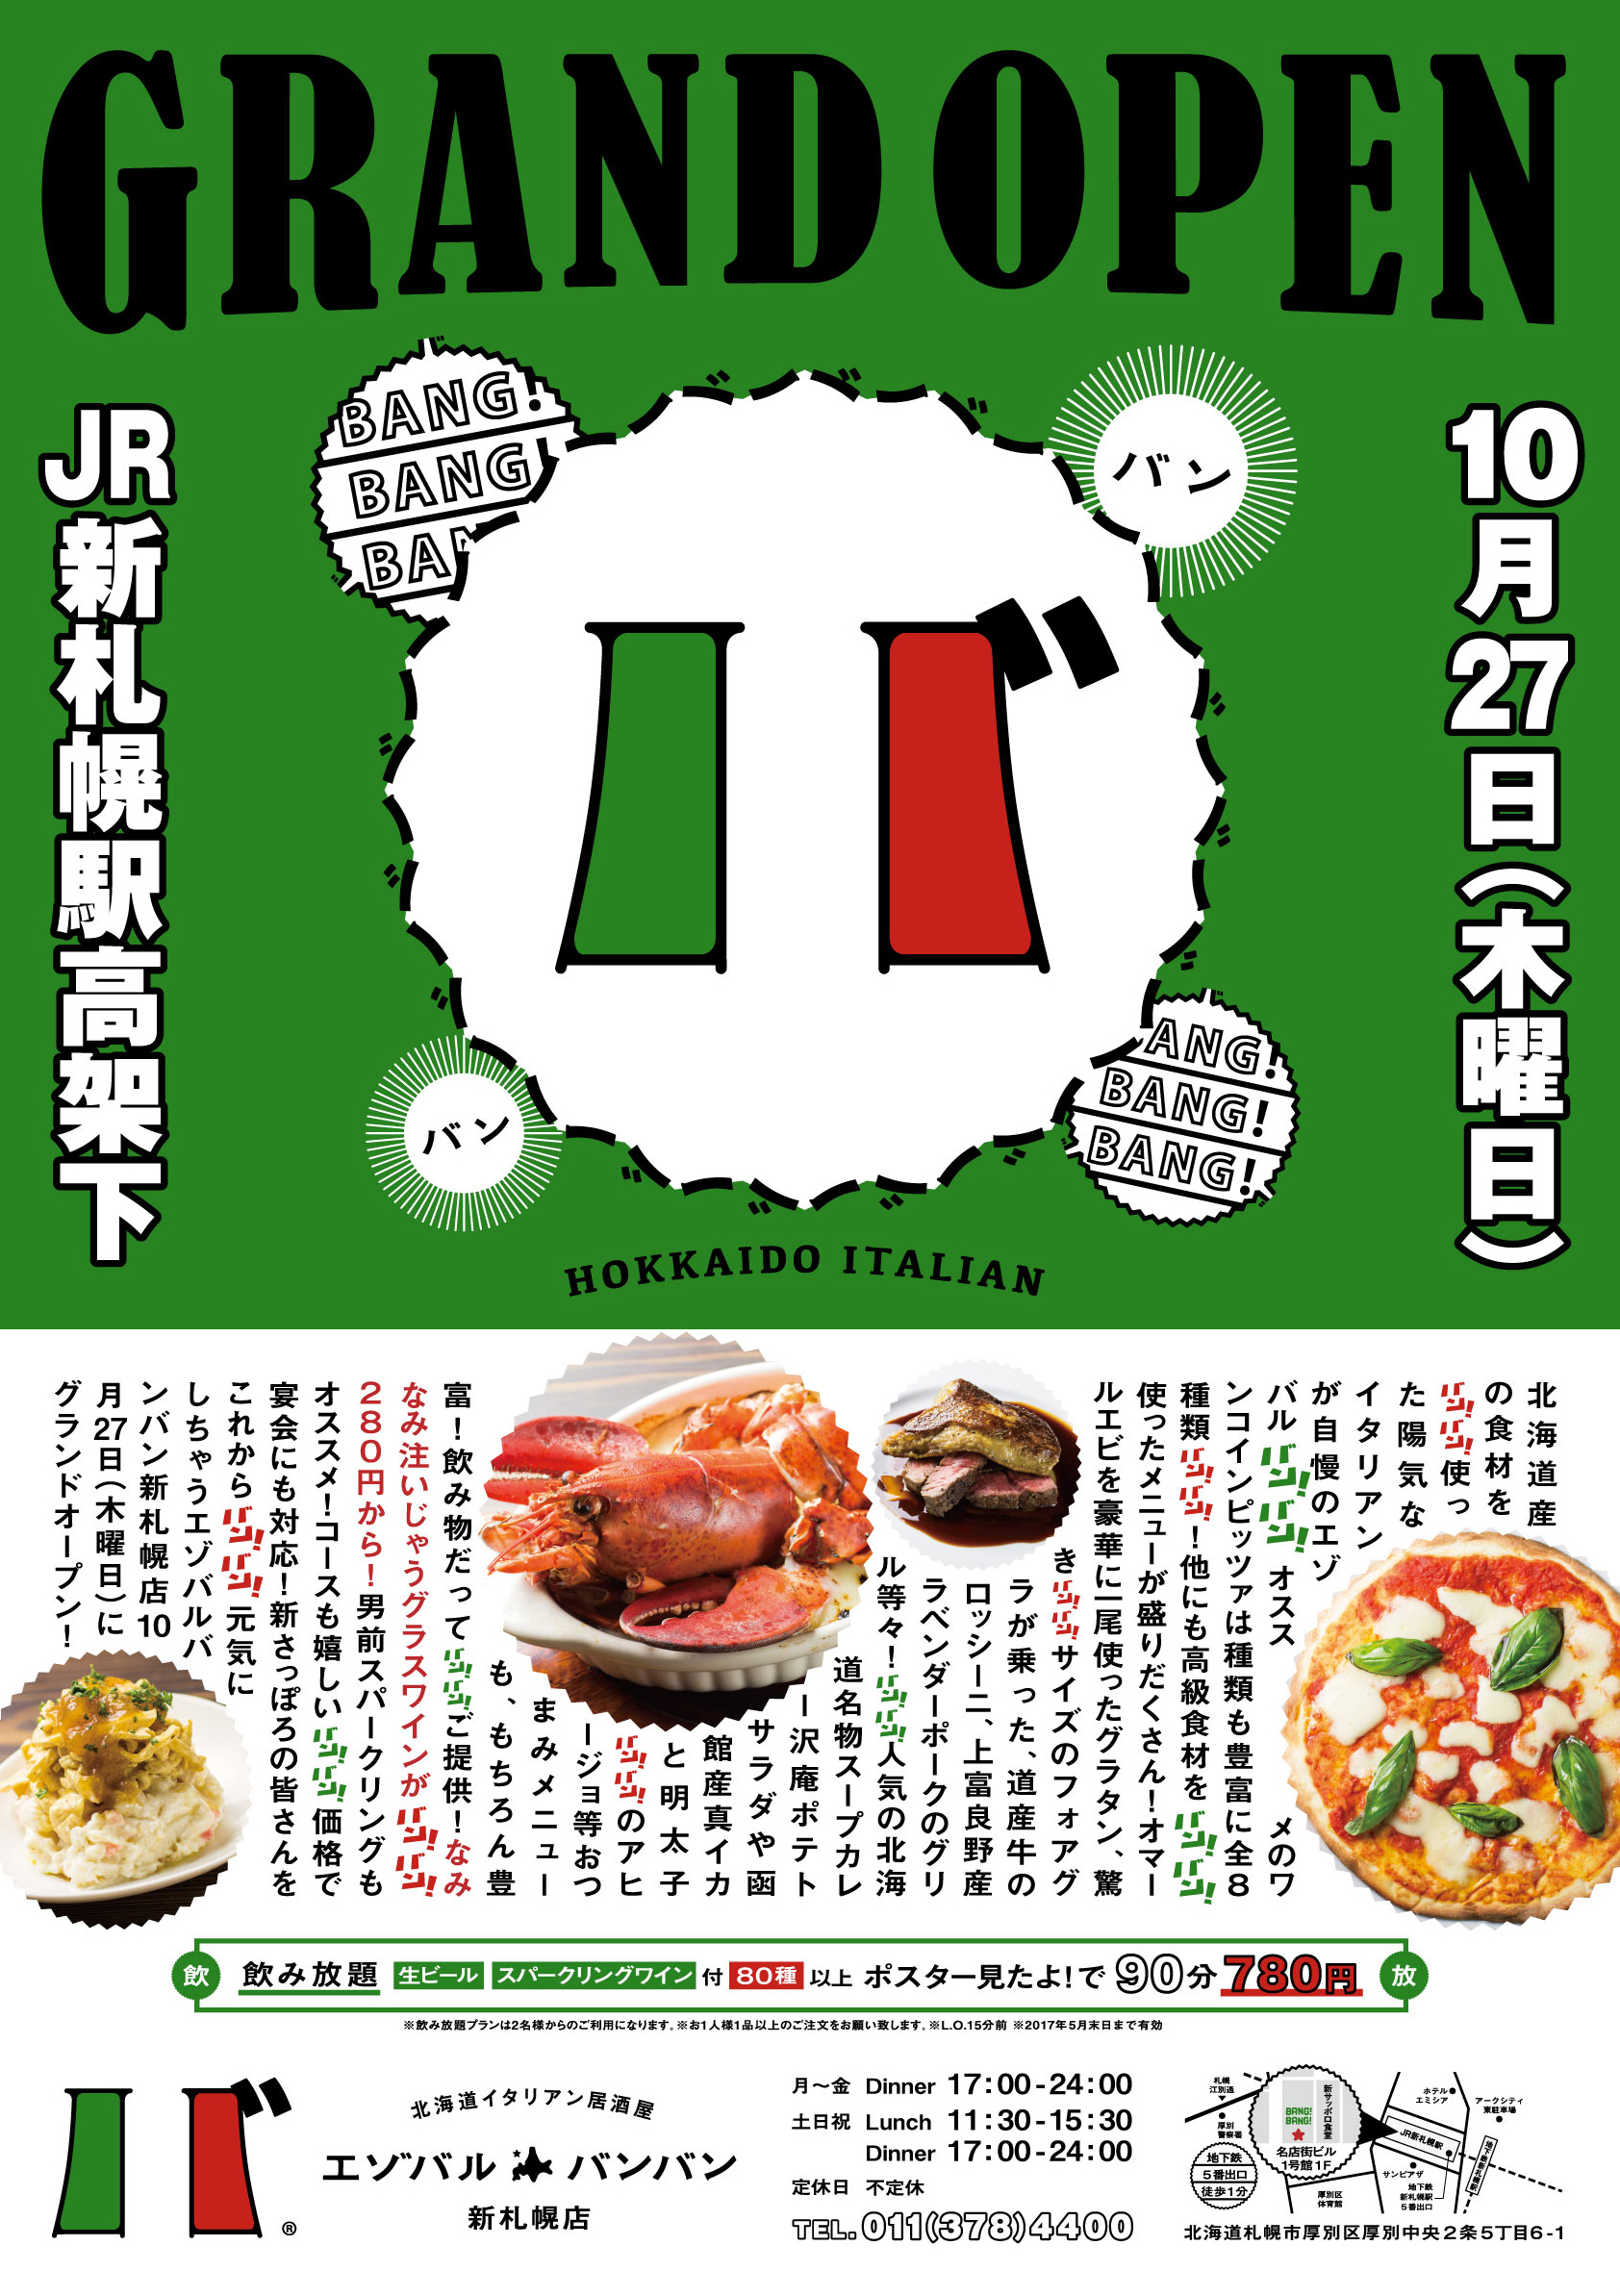 エゾバルバンバン新札幌にオープン 札幌市でクリエイティブなライフスタイルを飲食を通して提案する会社wonder Crew